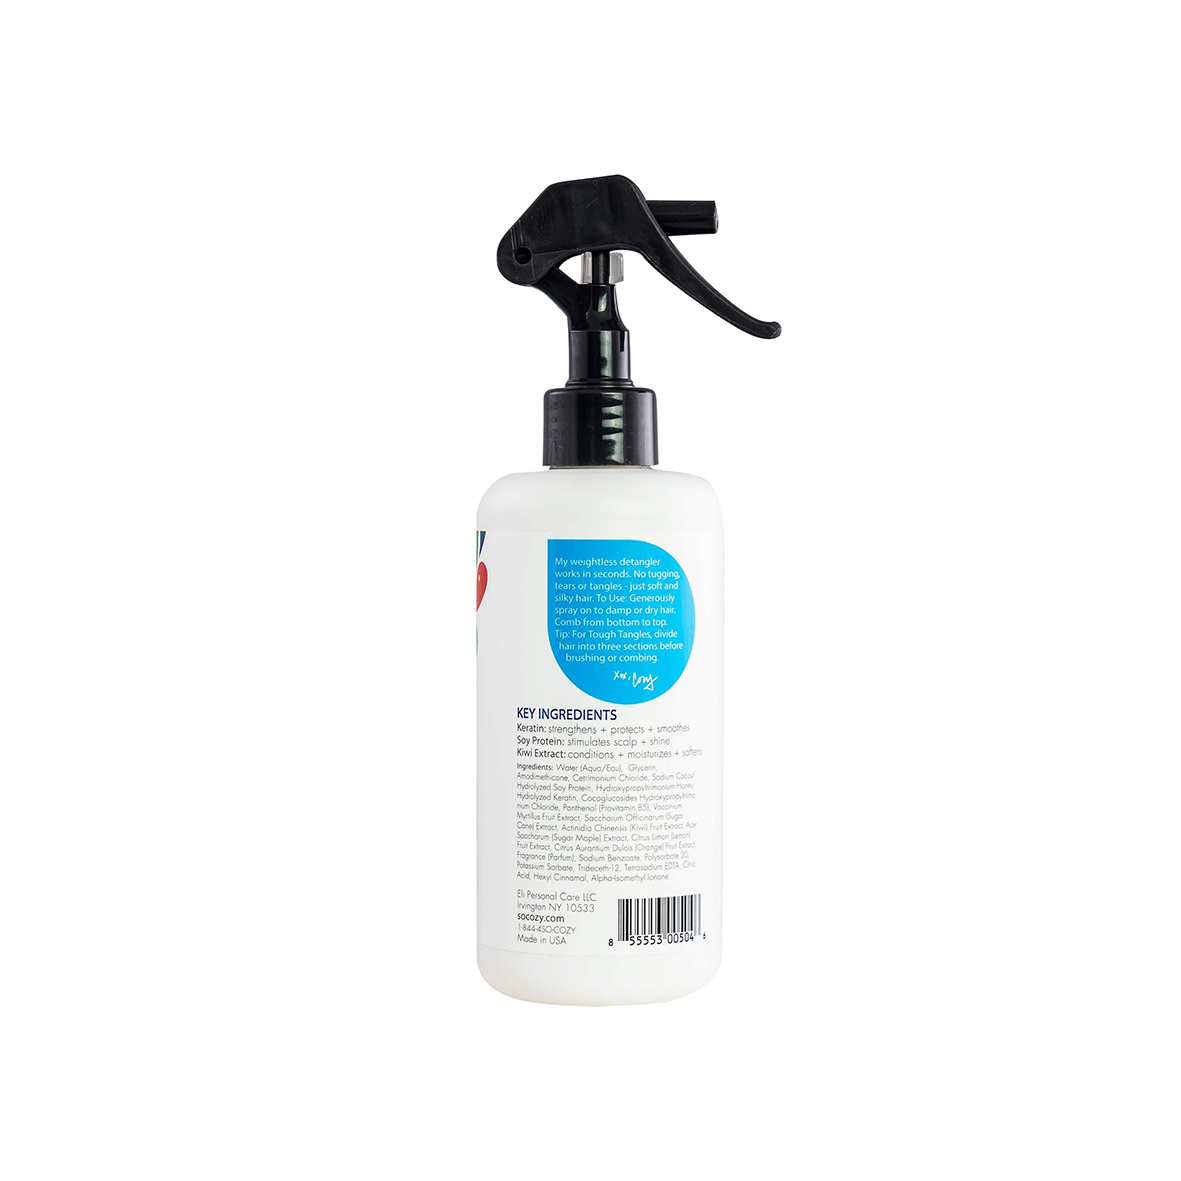 SoCozy Detangler Leave-In Conditioner Spray For Kids Hair, Mango